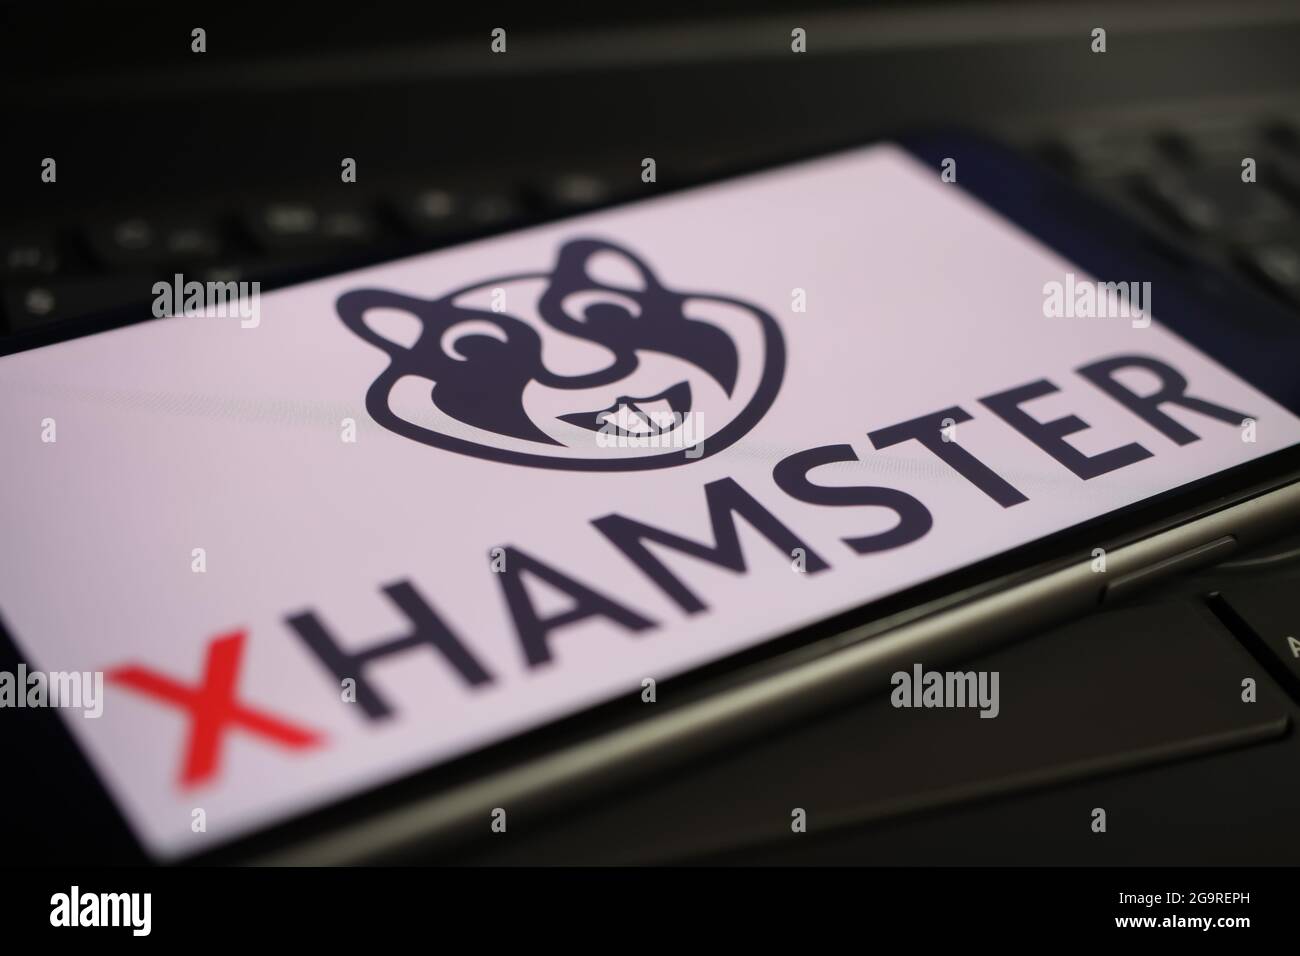 Viersen, Allemagne - 1er juin. 2021: Gros plan de l'écran de téléphone  mobile avec le logo de xhamster sur le clavier d'ordinateur Photo Stock -  Alamy